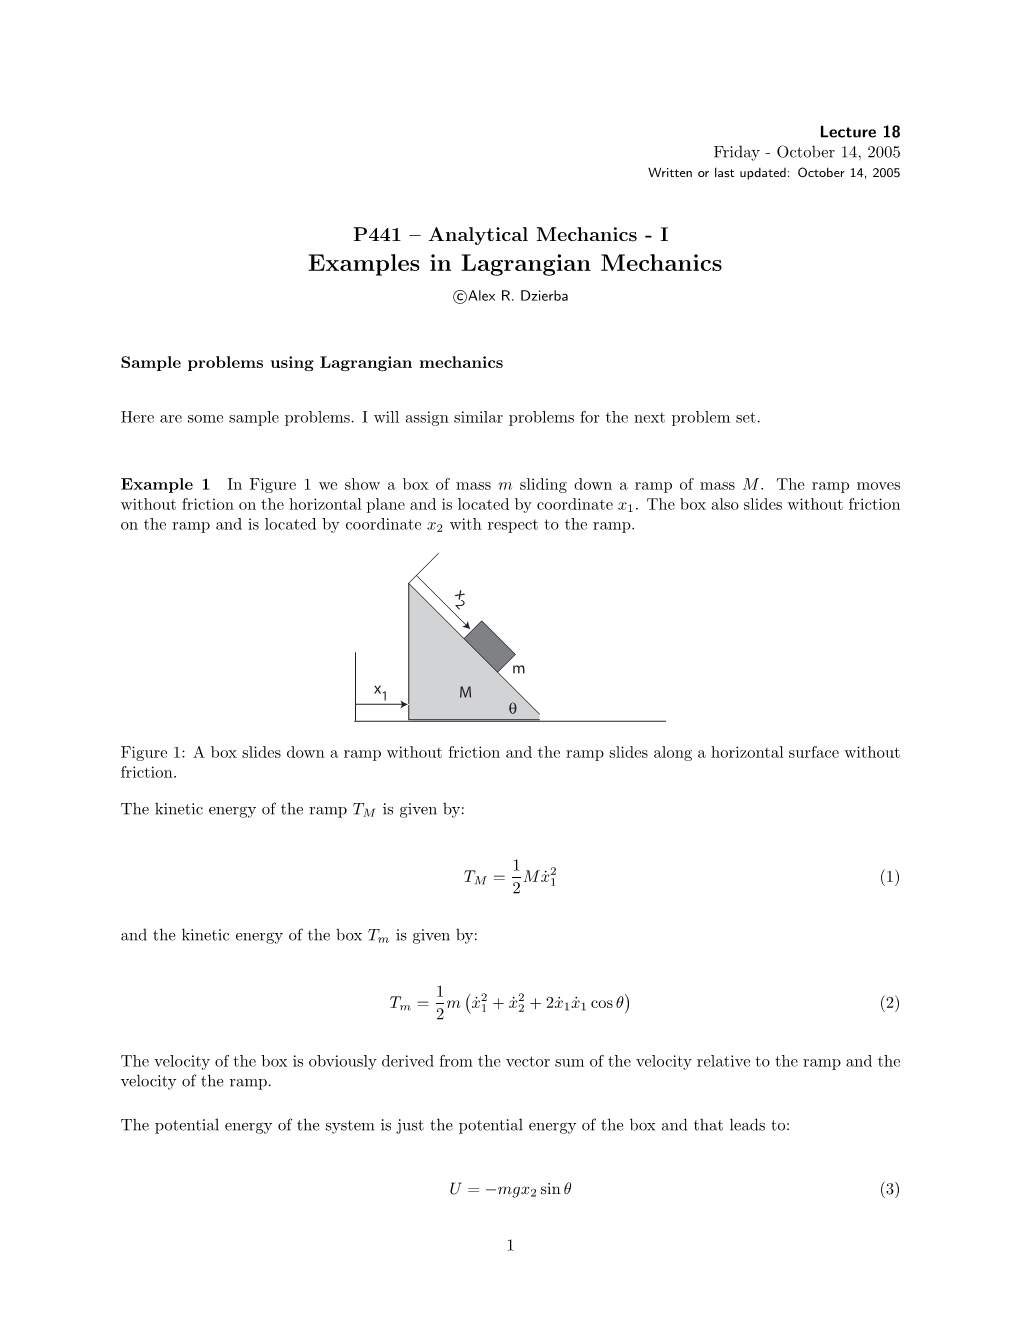 Examples in Lagrangian Mechanics C Alex R